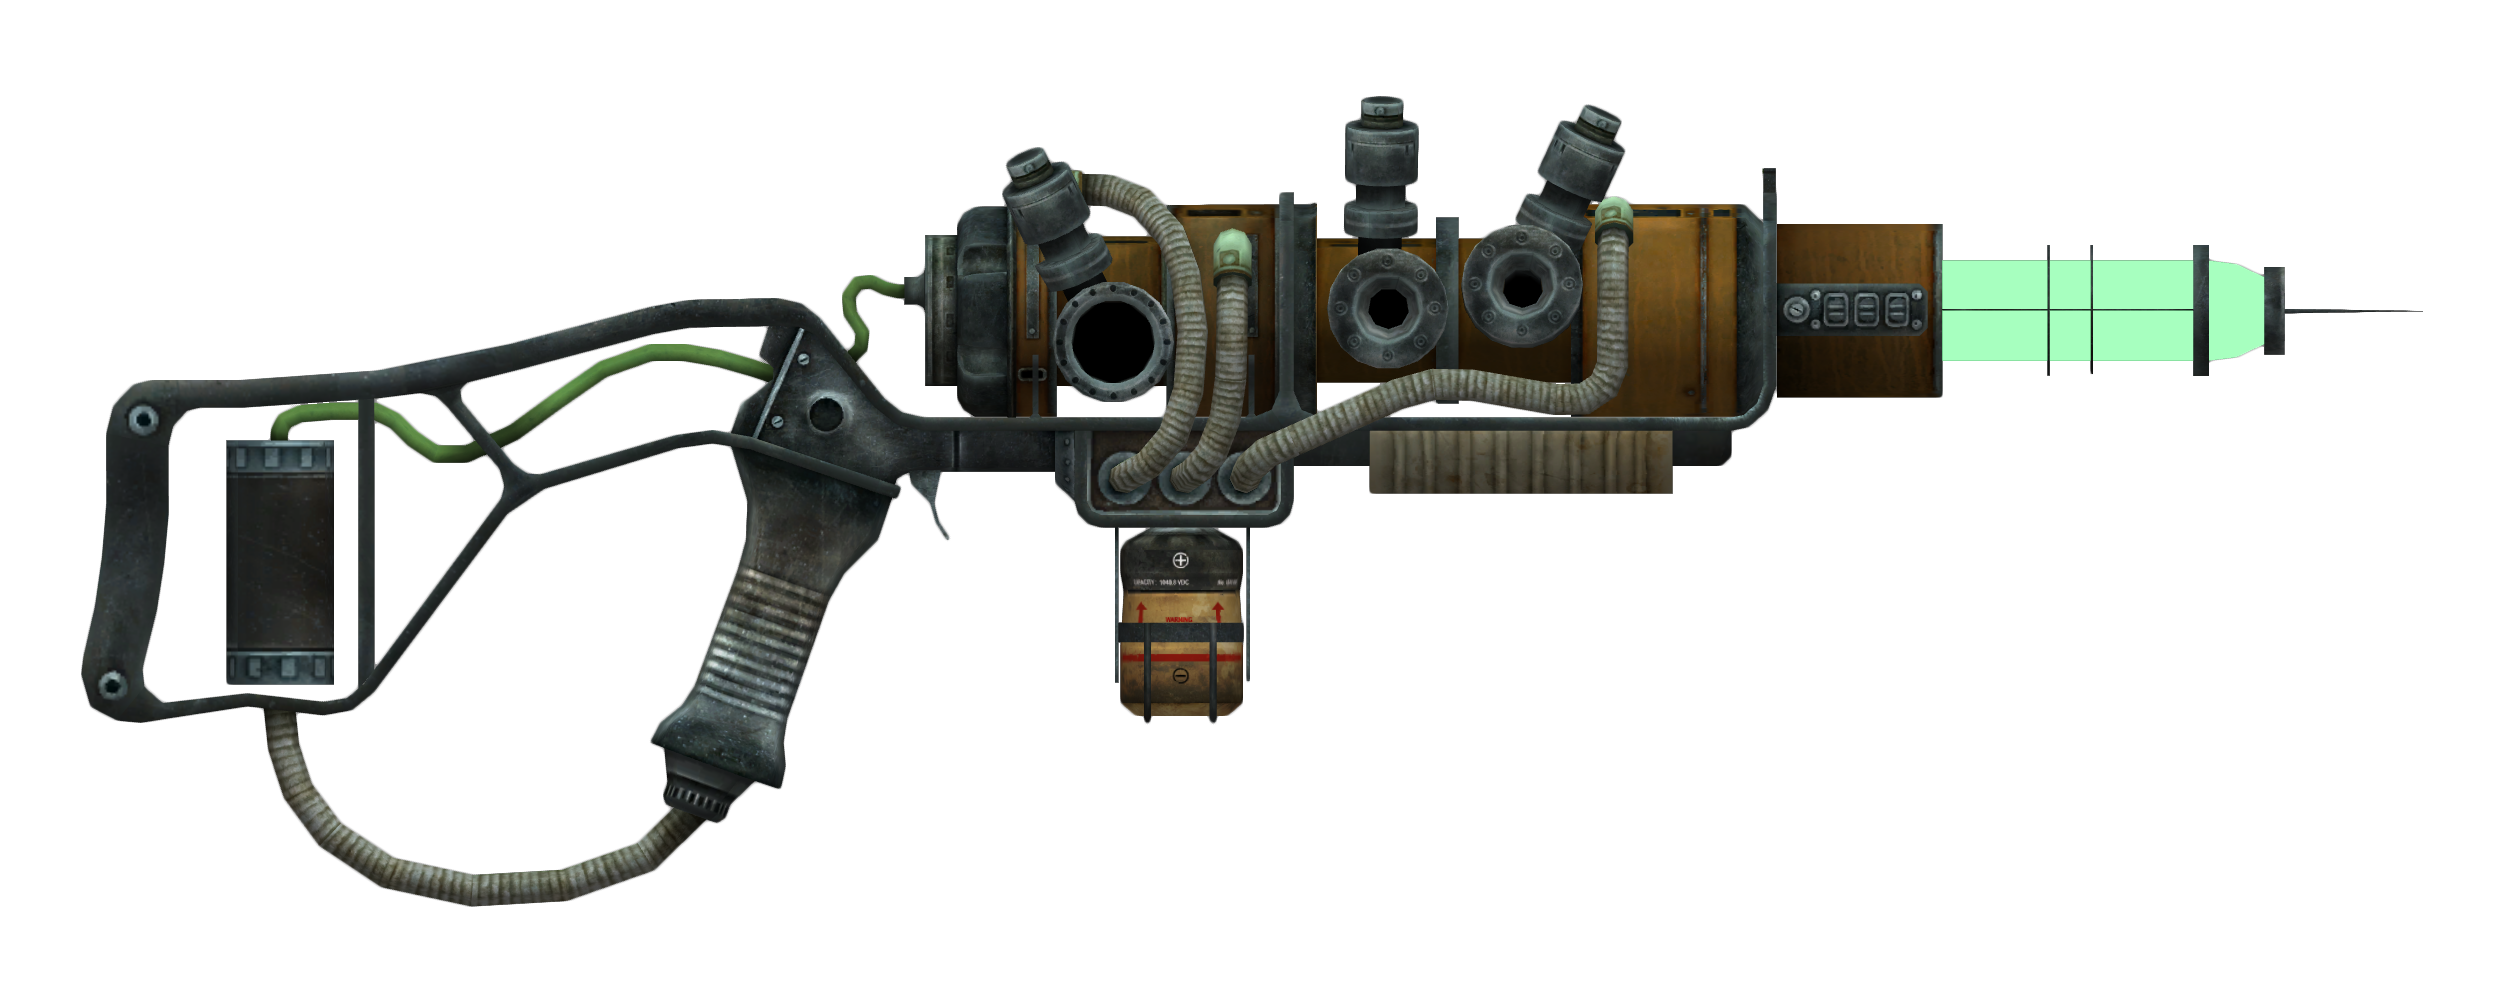 fallout 2 plasma rifle